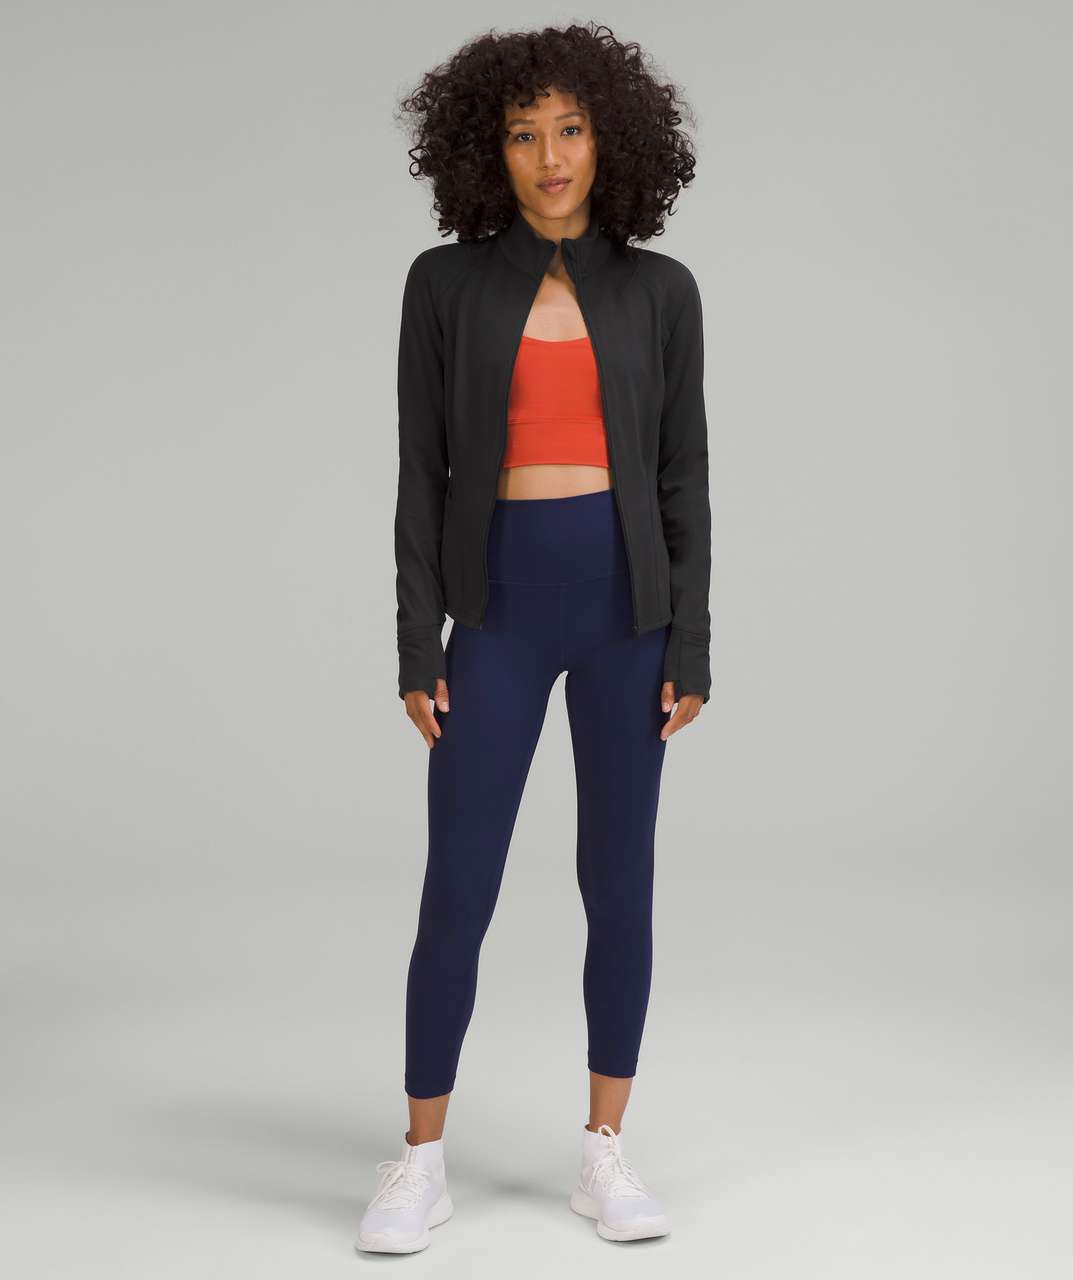 Lululemon Women's InStill Jacket Black Full Zip Size 4